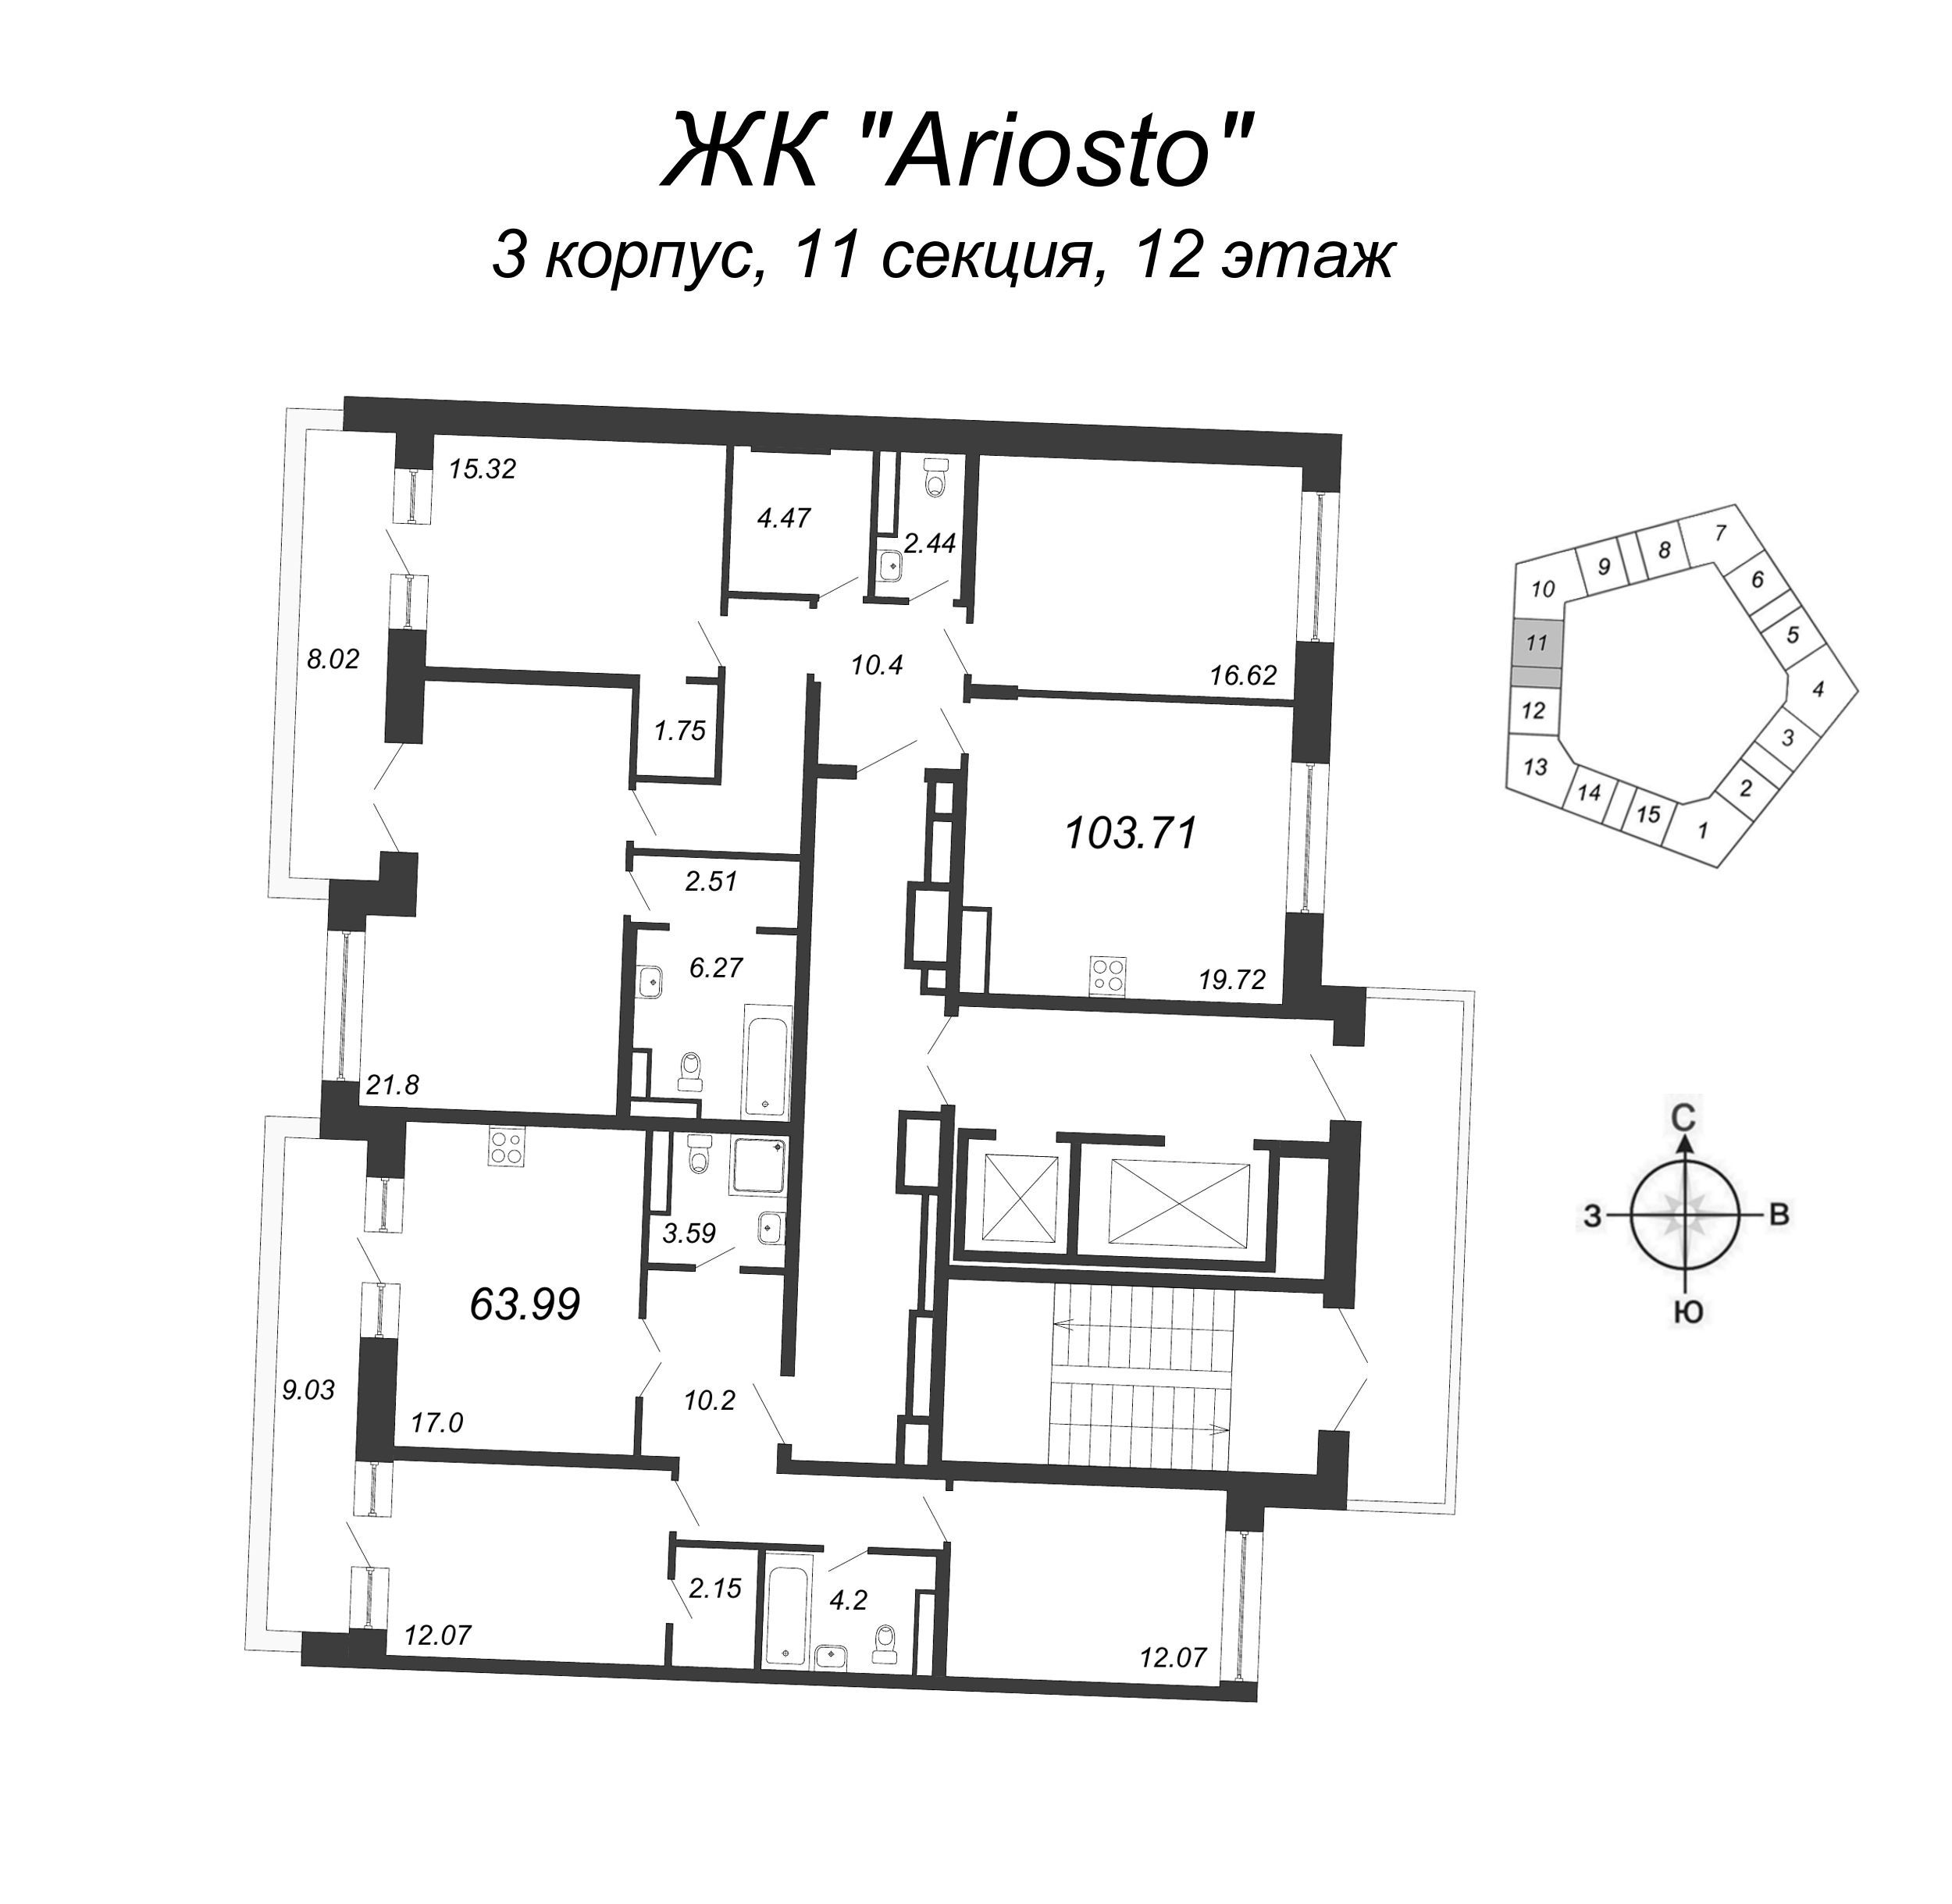 4-комнатная (Евро) квартира, 103.71 м² в ЖК "Ariosto" - планировка этажа